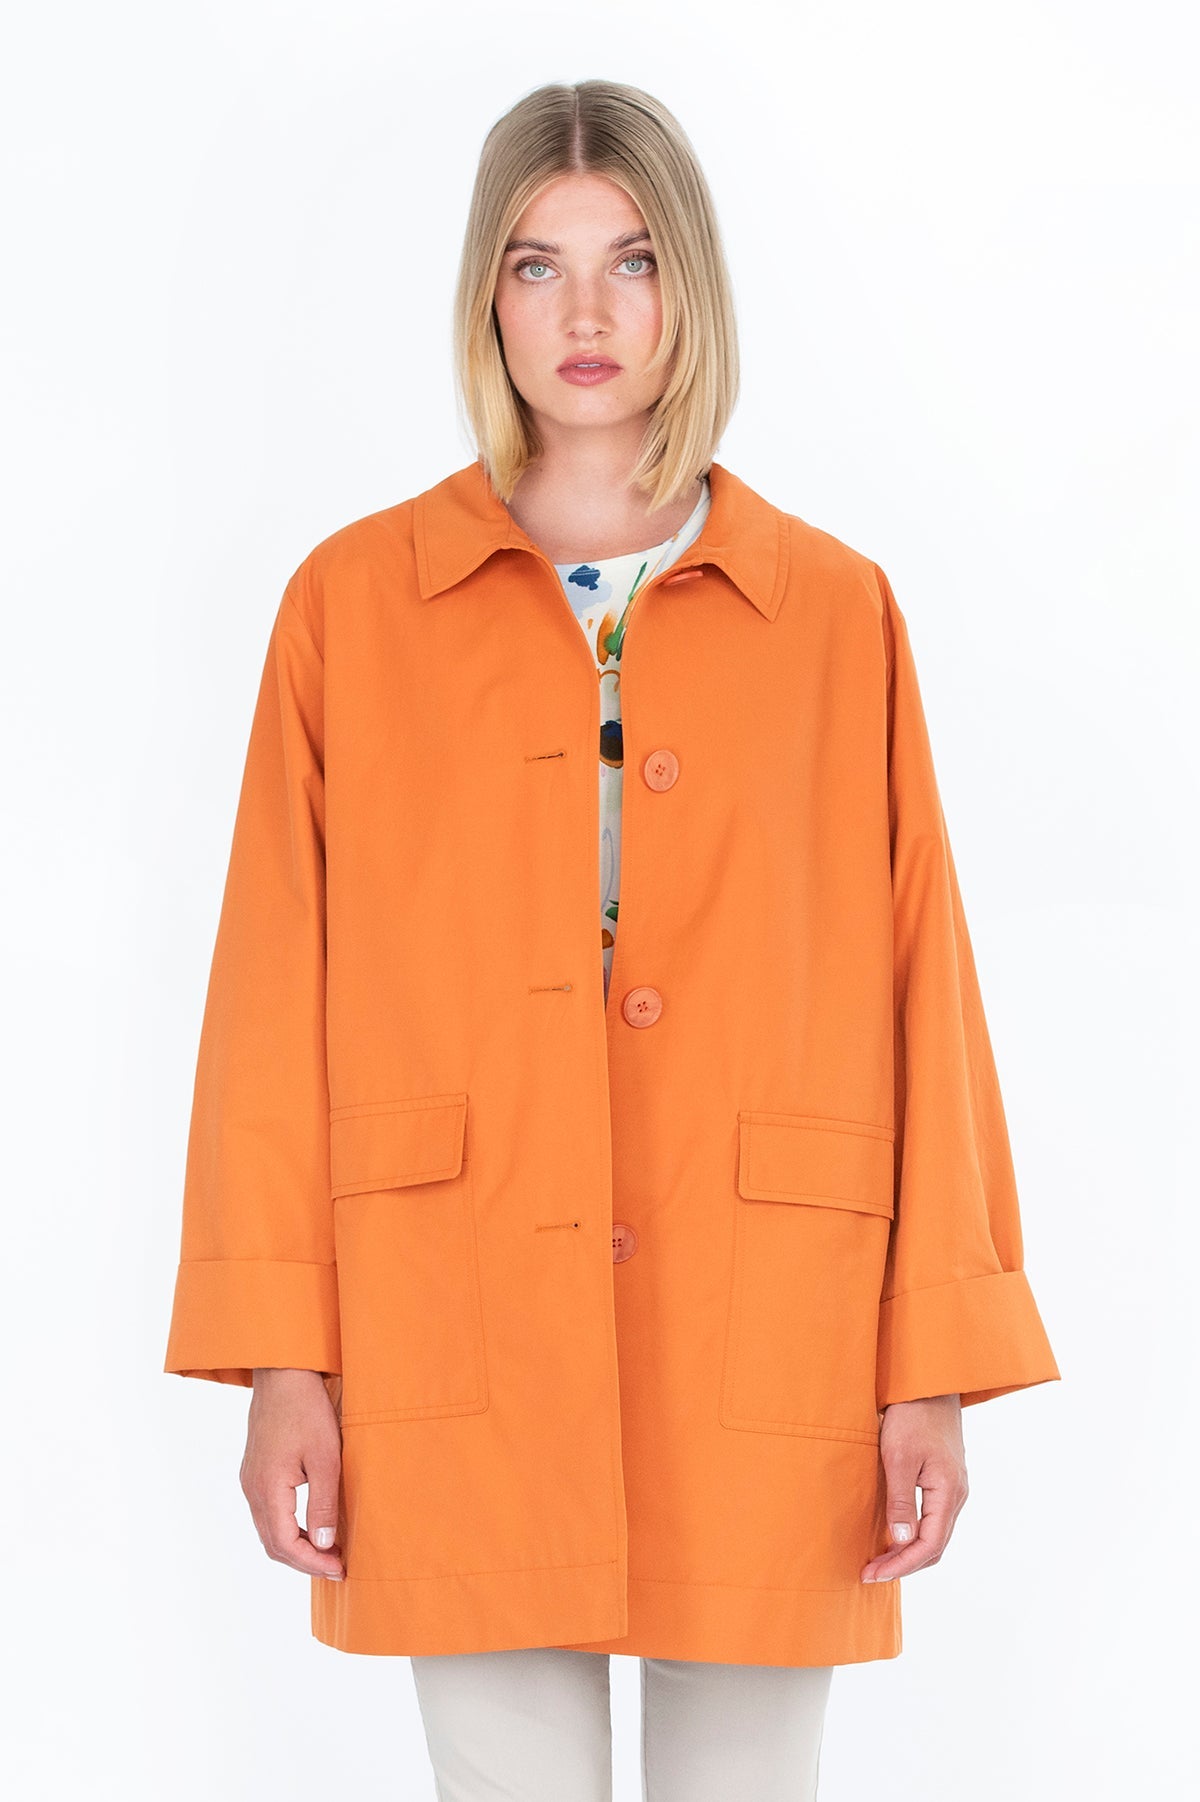 UOMA coat orange